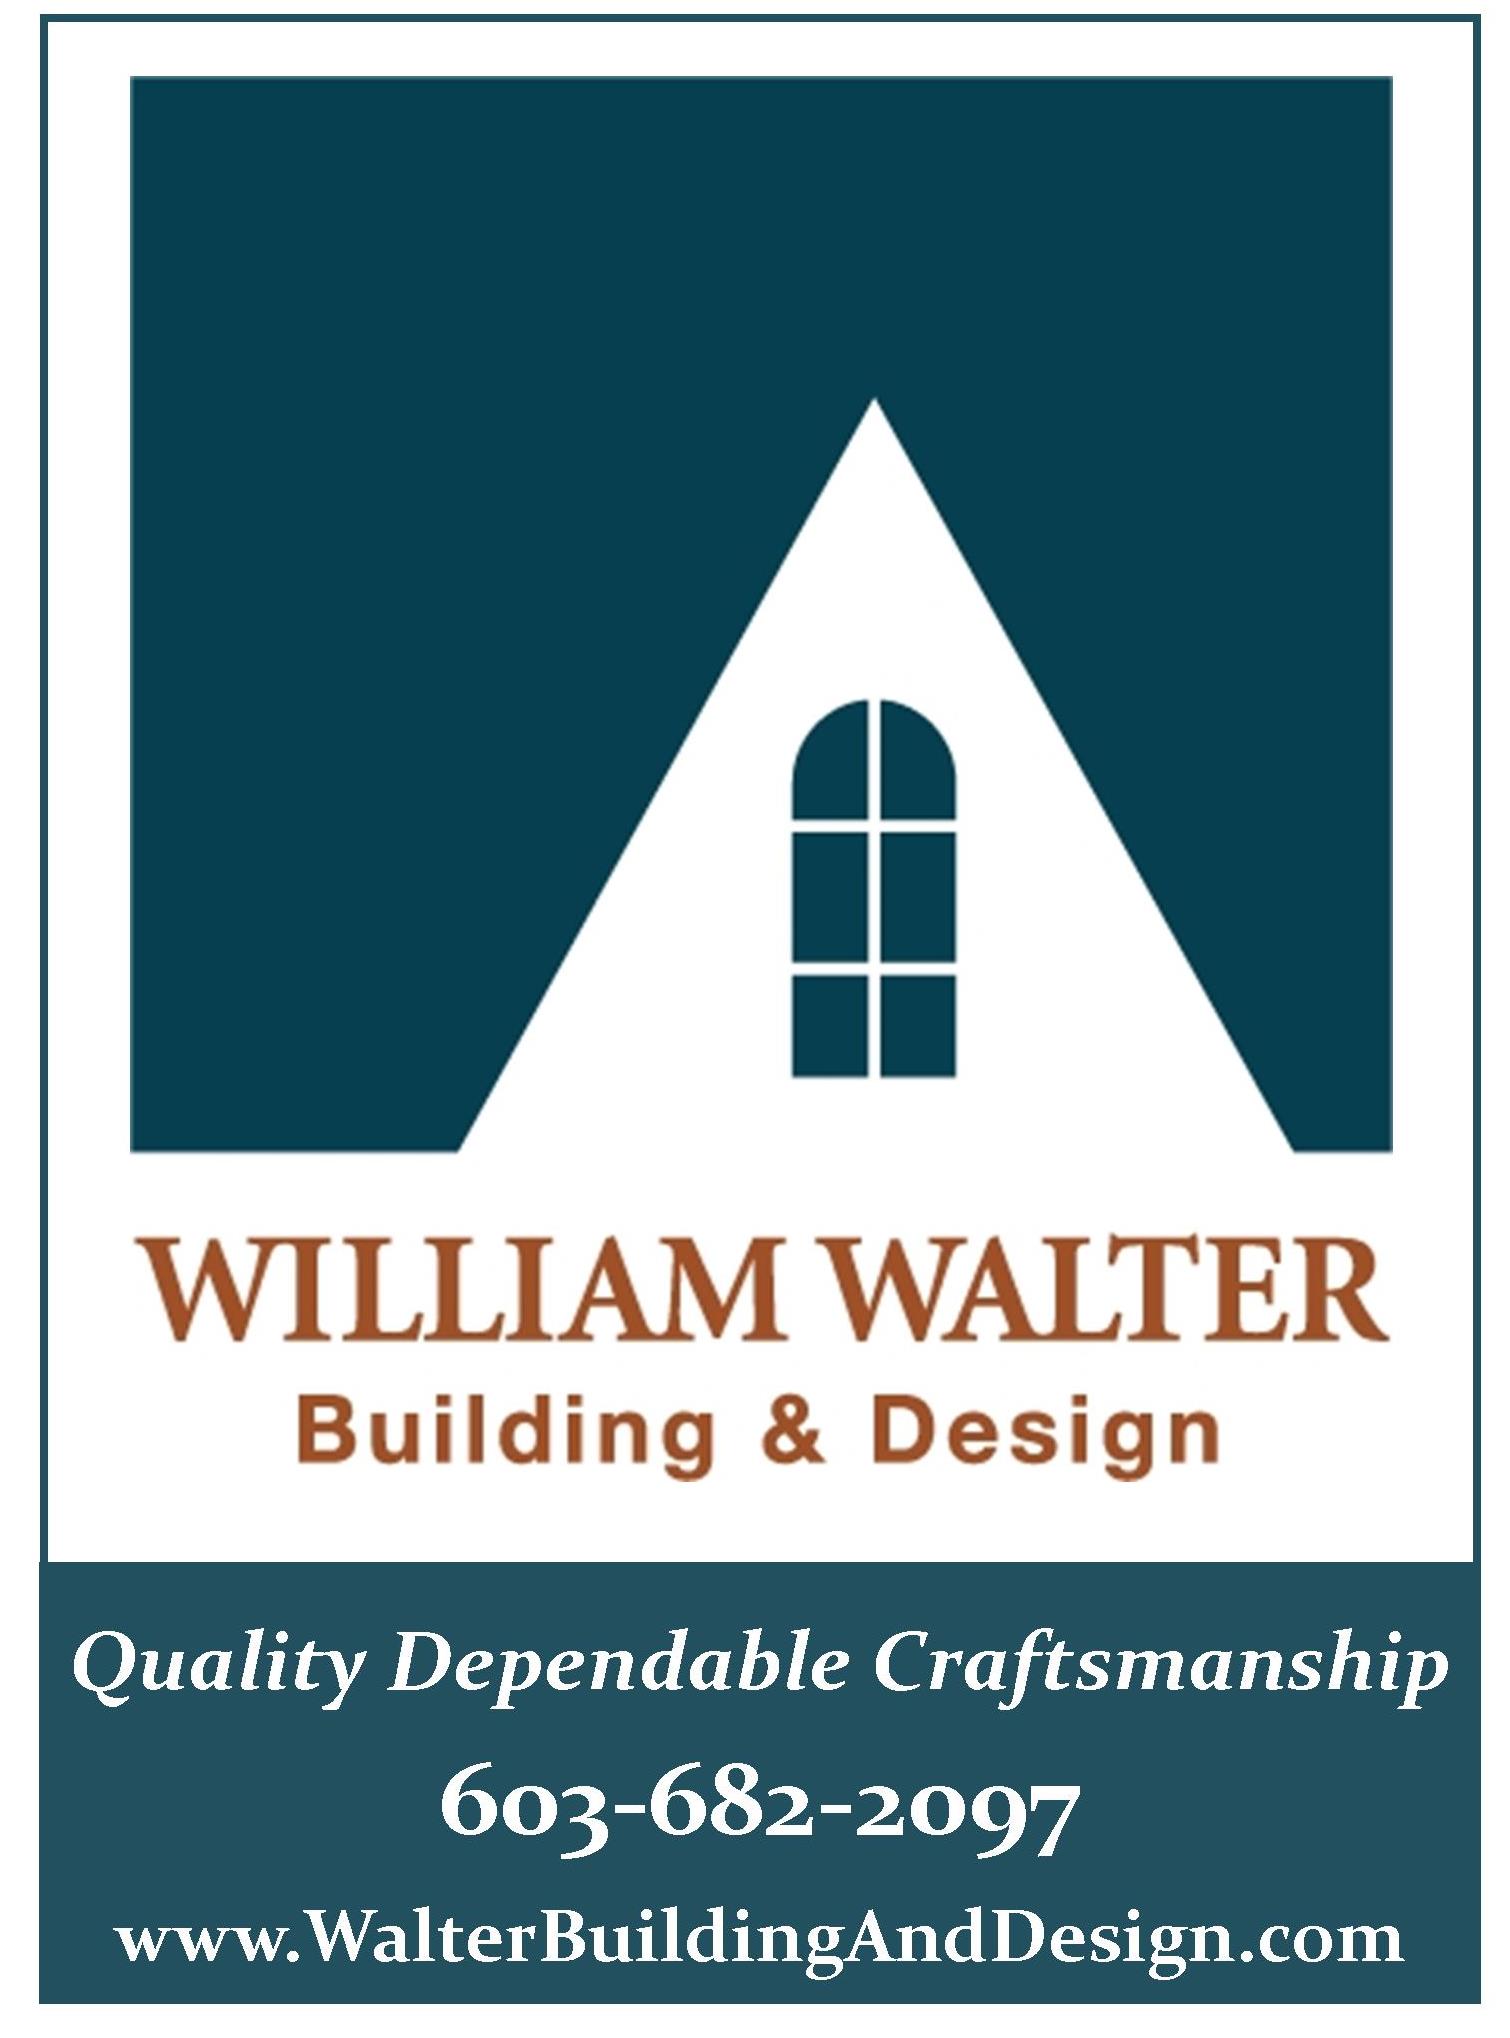 William Walter Building & Design